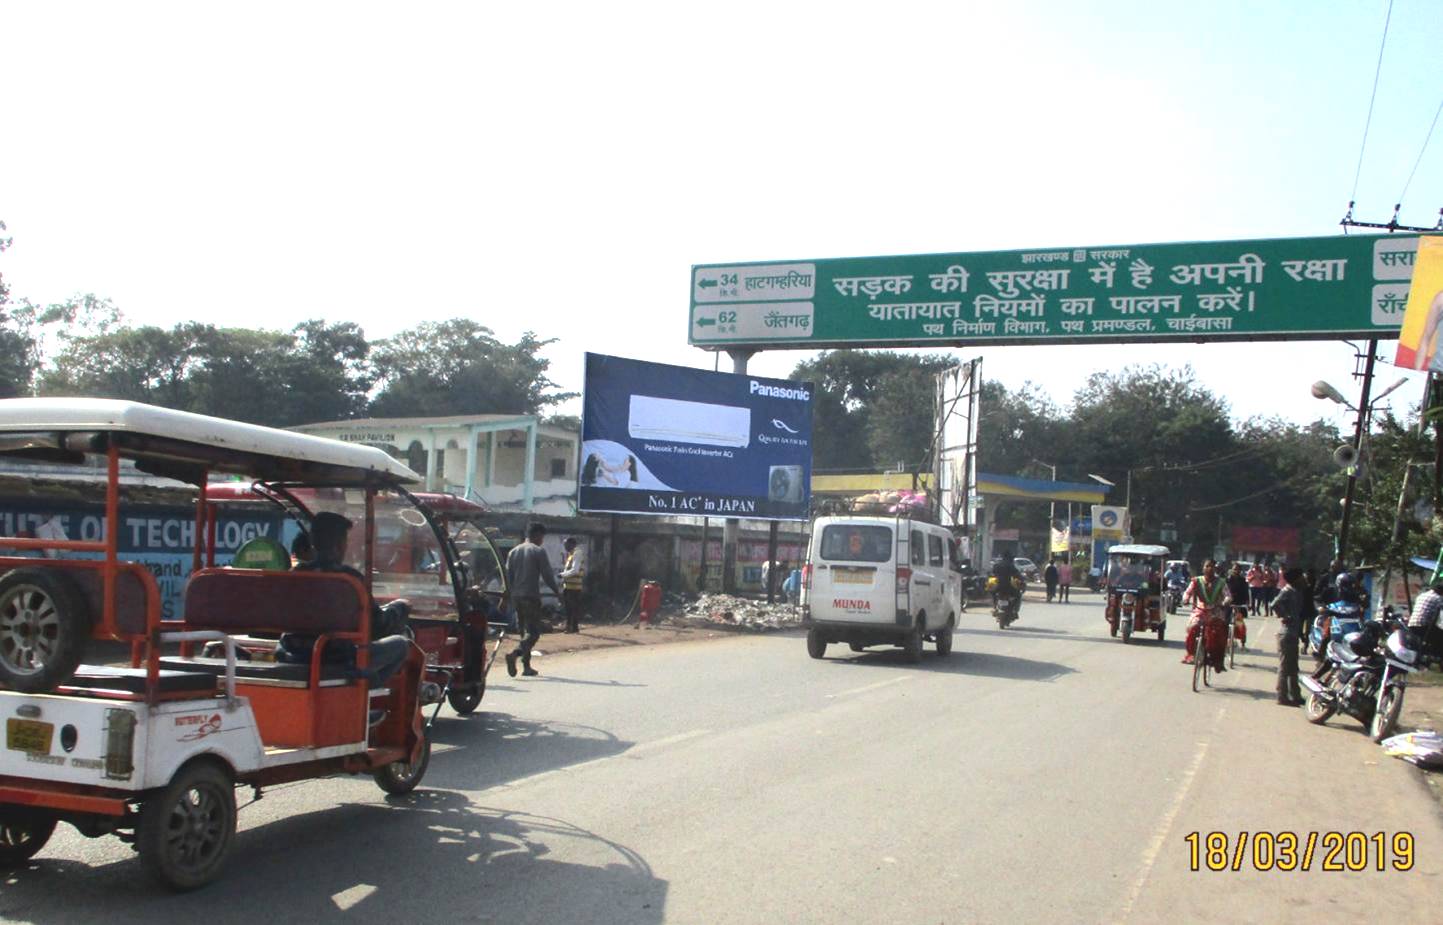 Billboard - Bus Stand, Chaibasa, Jharkhand